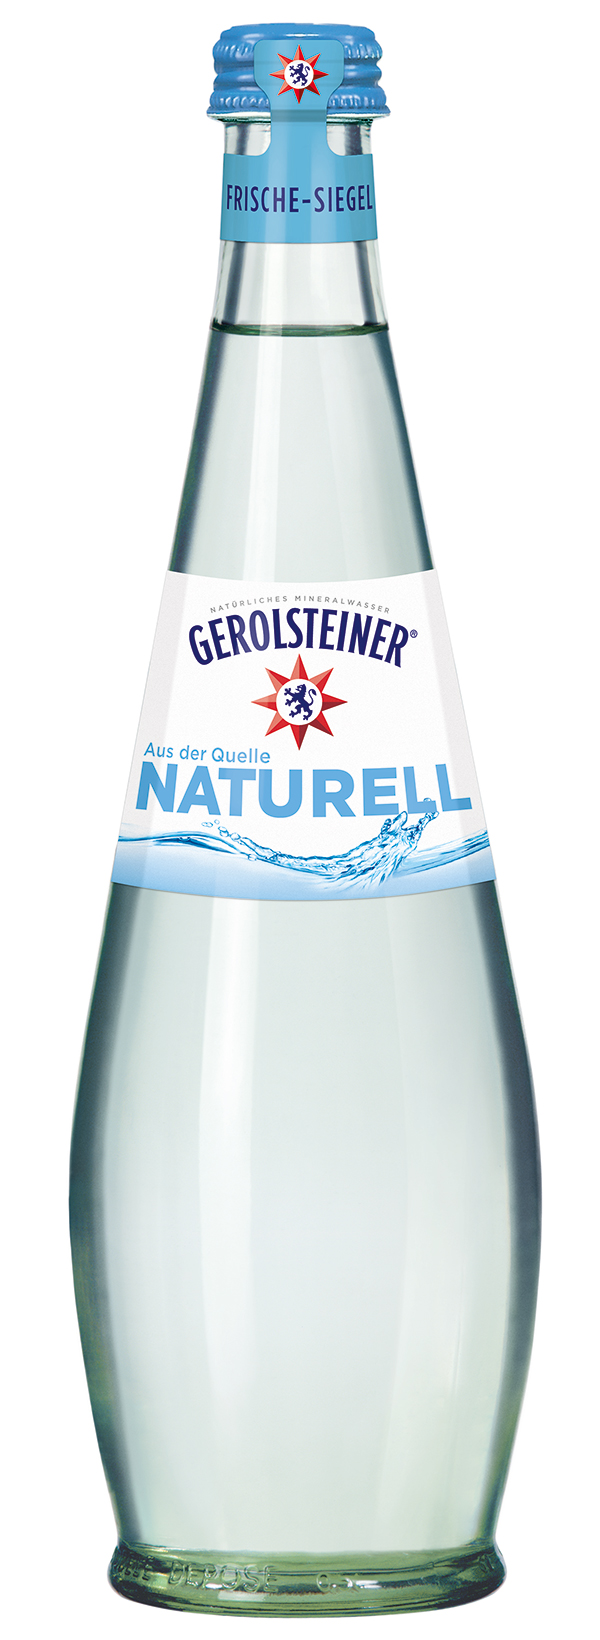 Gerolsteiner Naturell Gourmet 15 x 0,5 l (Glas)